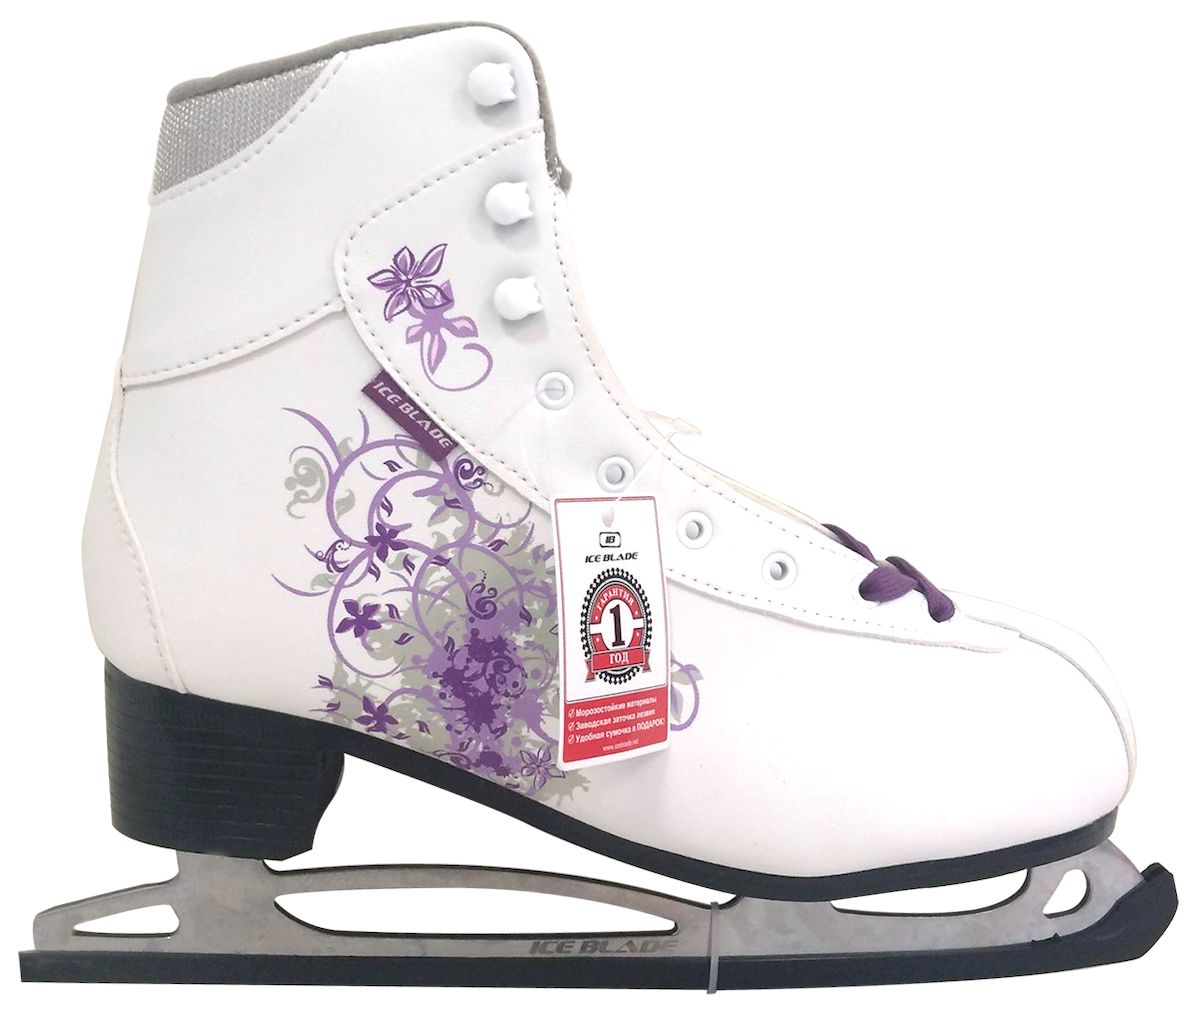 Коньки фигурные Ice Blade Sochi, цвет: белый, фиолетовый. УТ-00004988. Размер 35